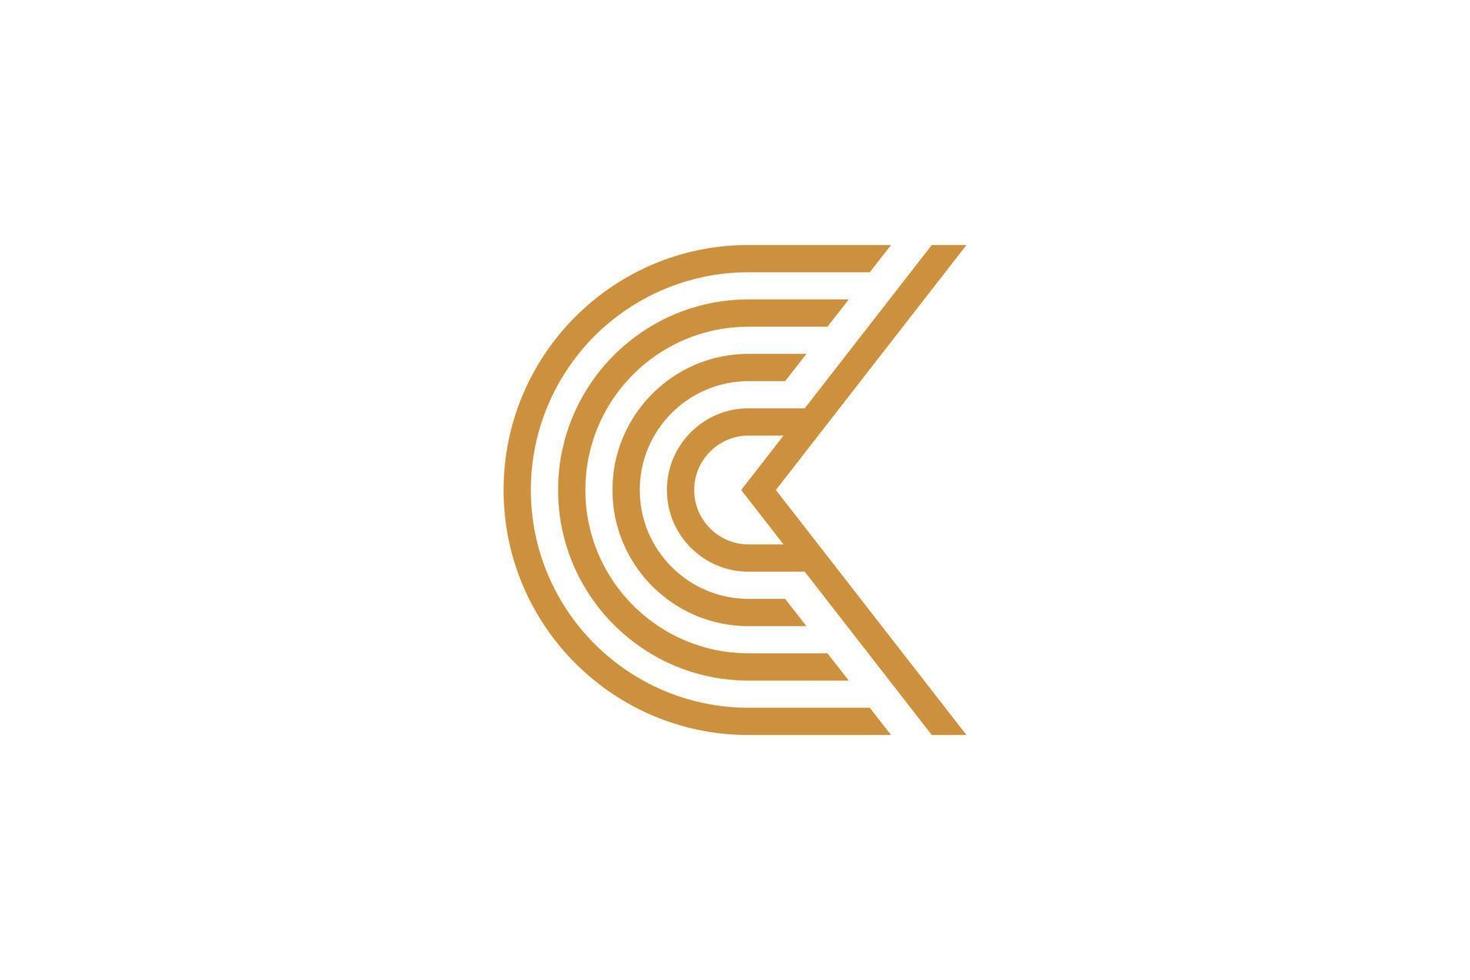 de brief c monoline logo vector